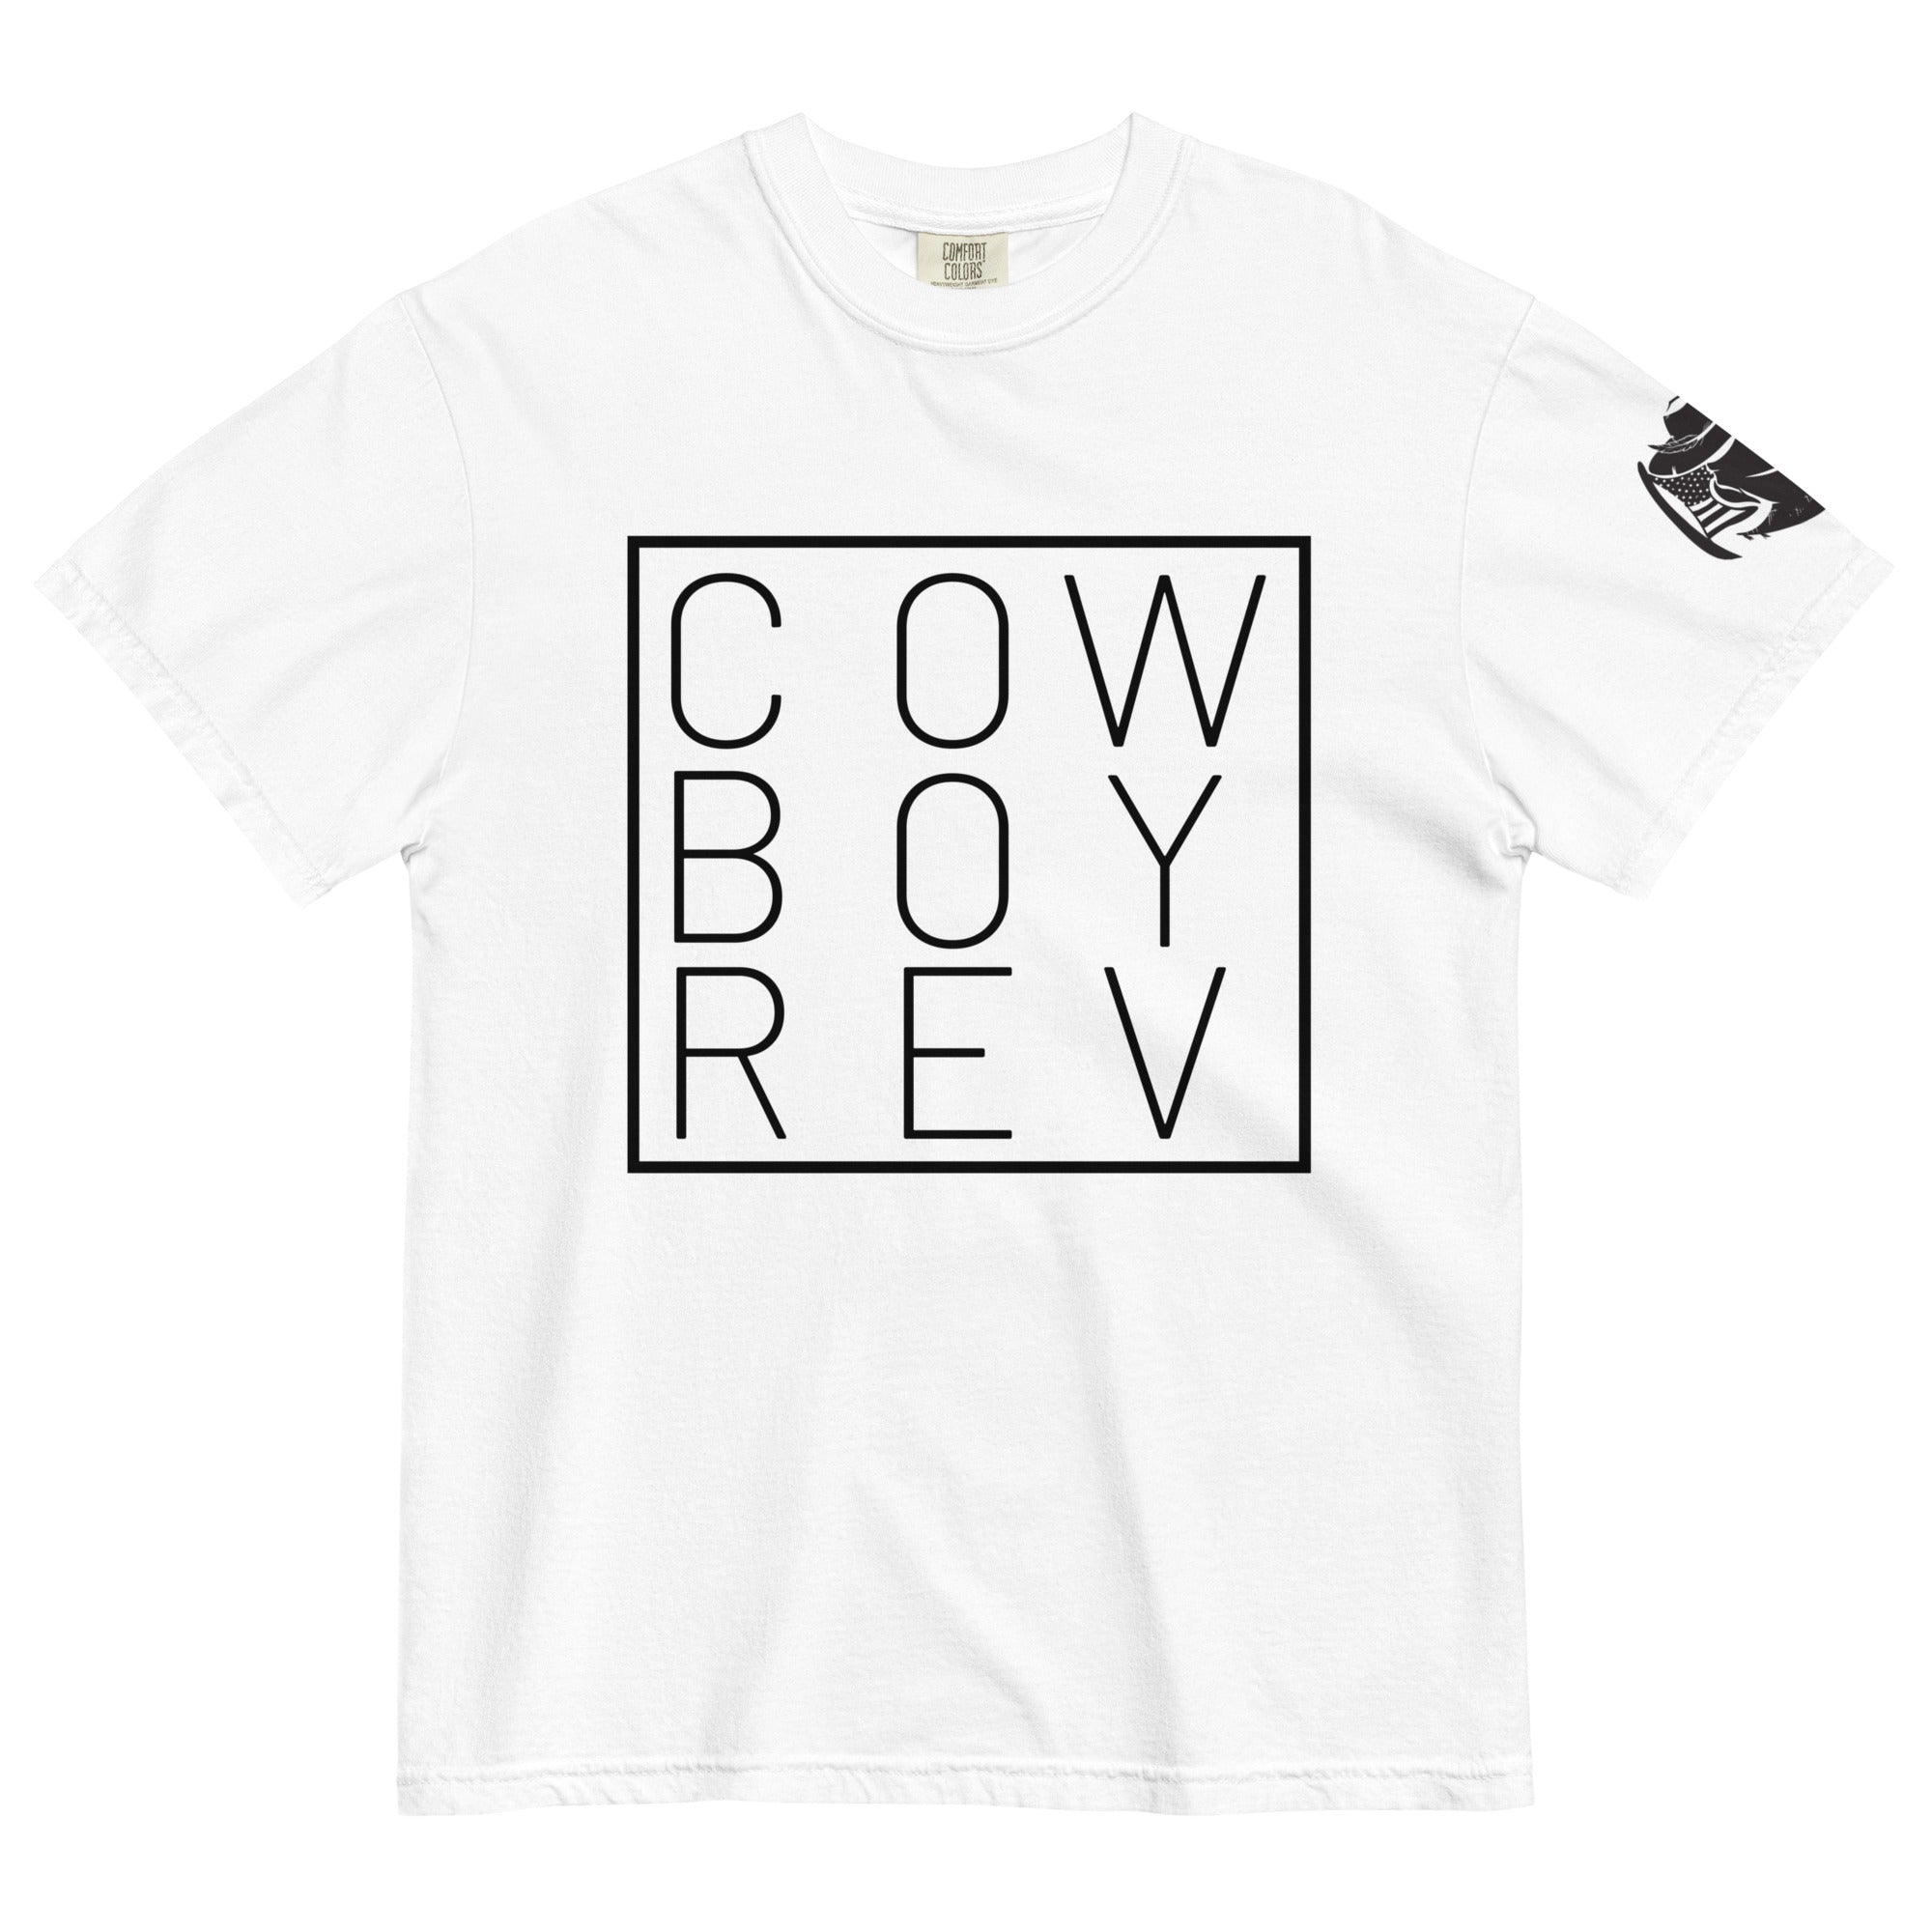 "COW BOY REV" Cowboy Revolution Garment-dyed Heavyweight Tee